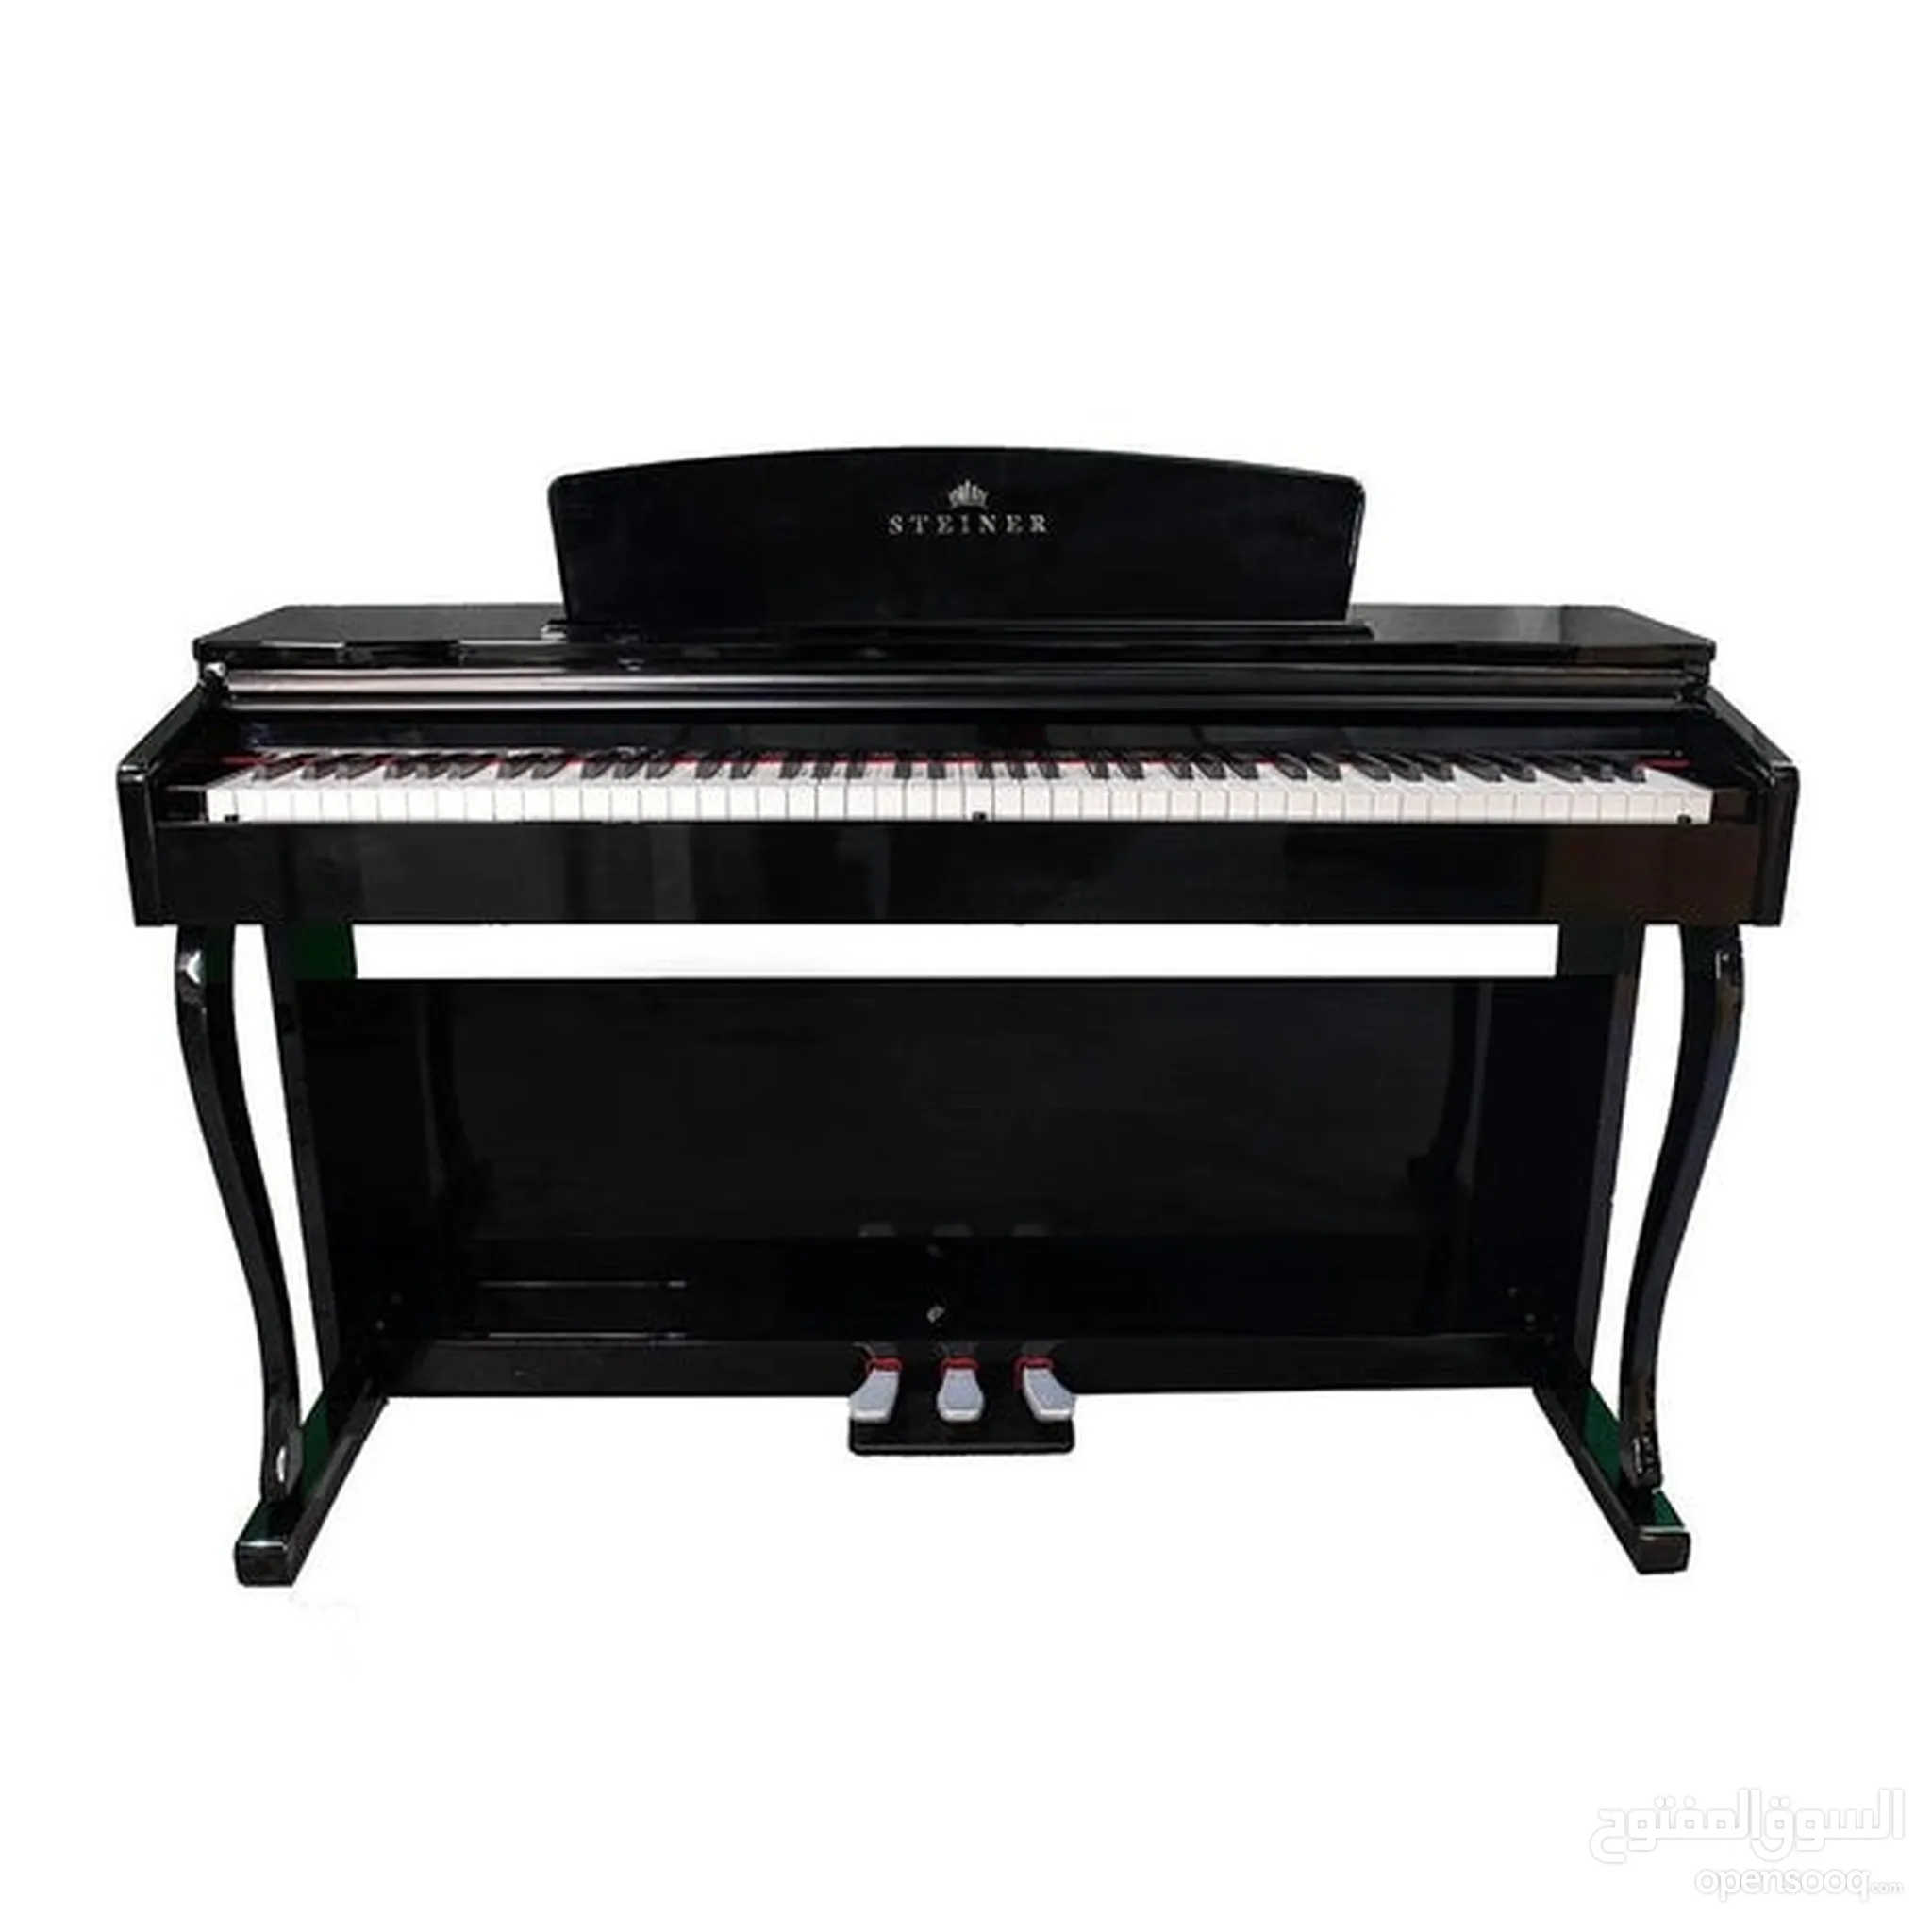 بيانو و اورج للبيع : الات موسيقية : افضل الاسعار في الإمارات | السوق المفتوح